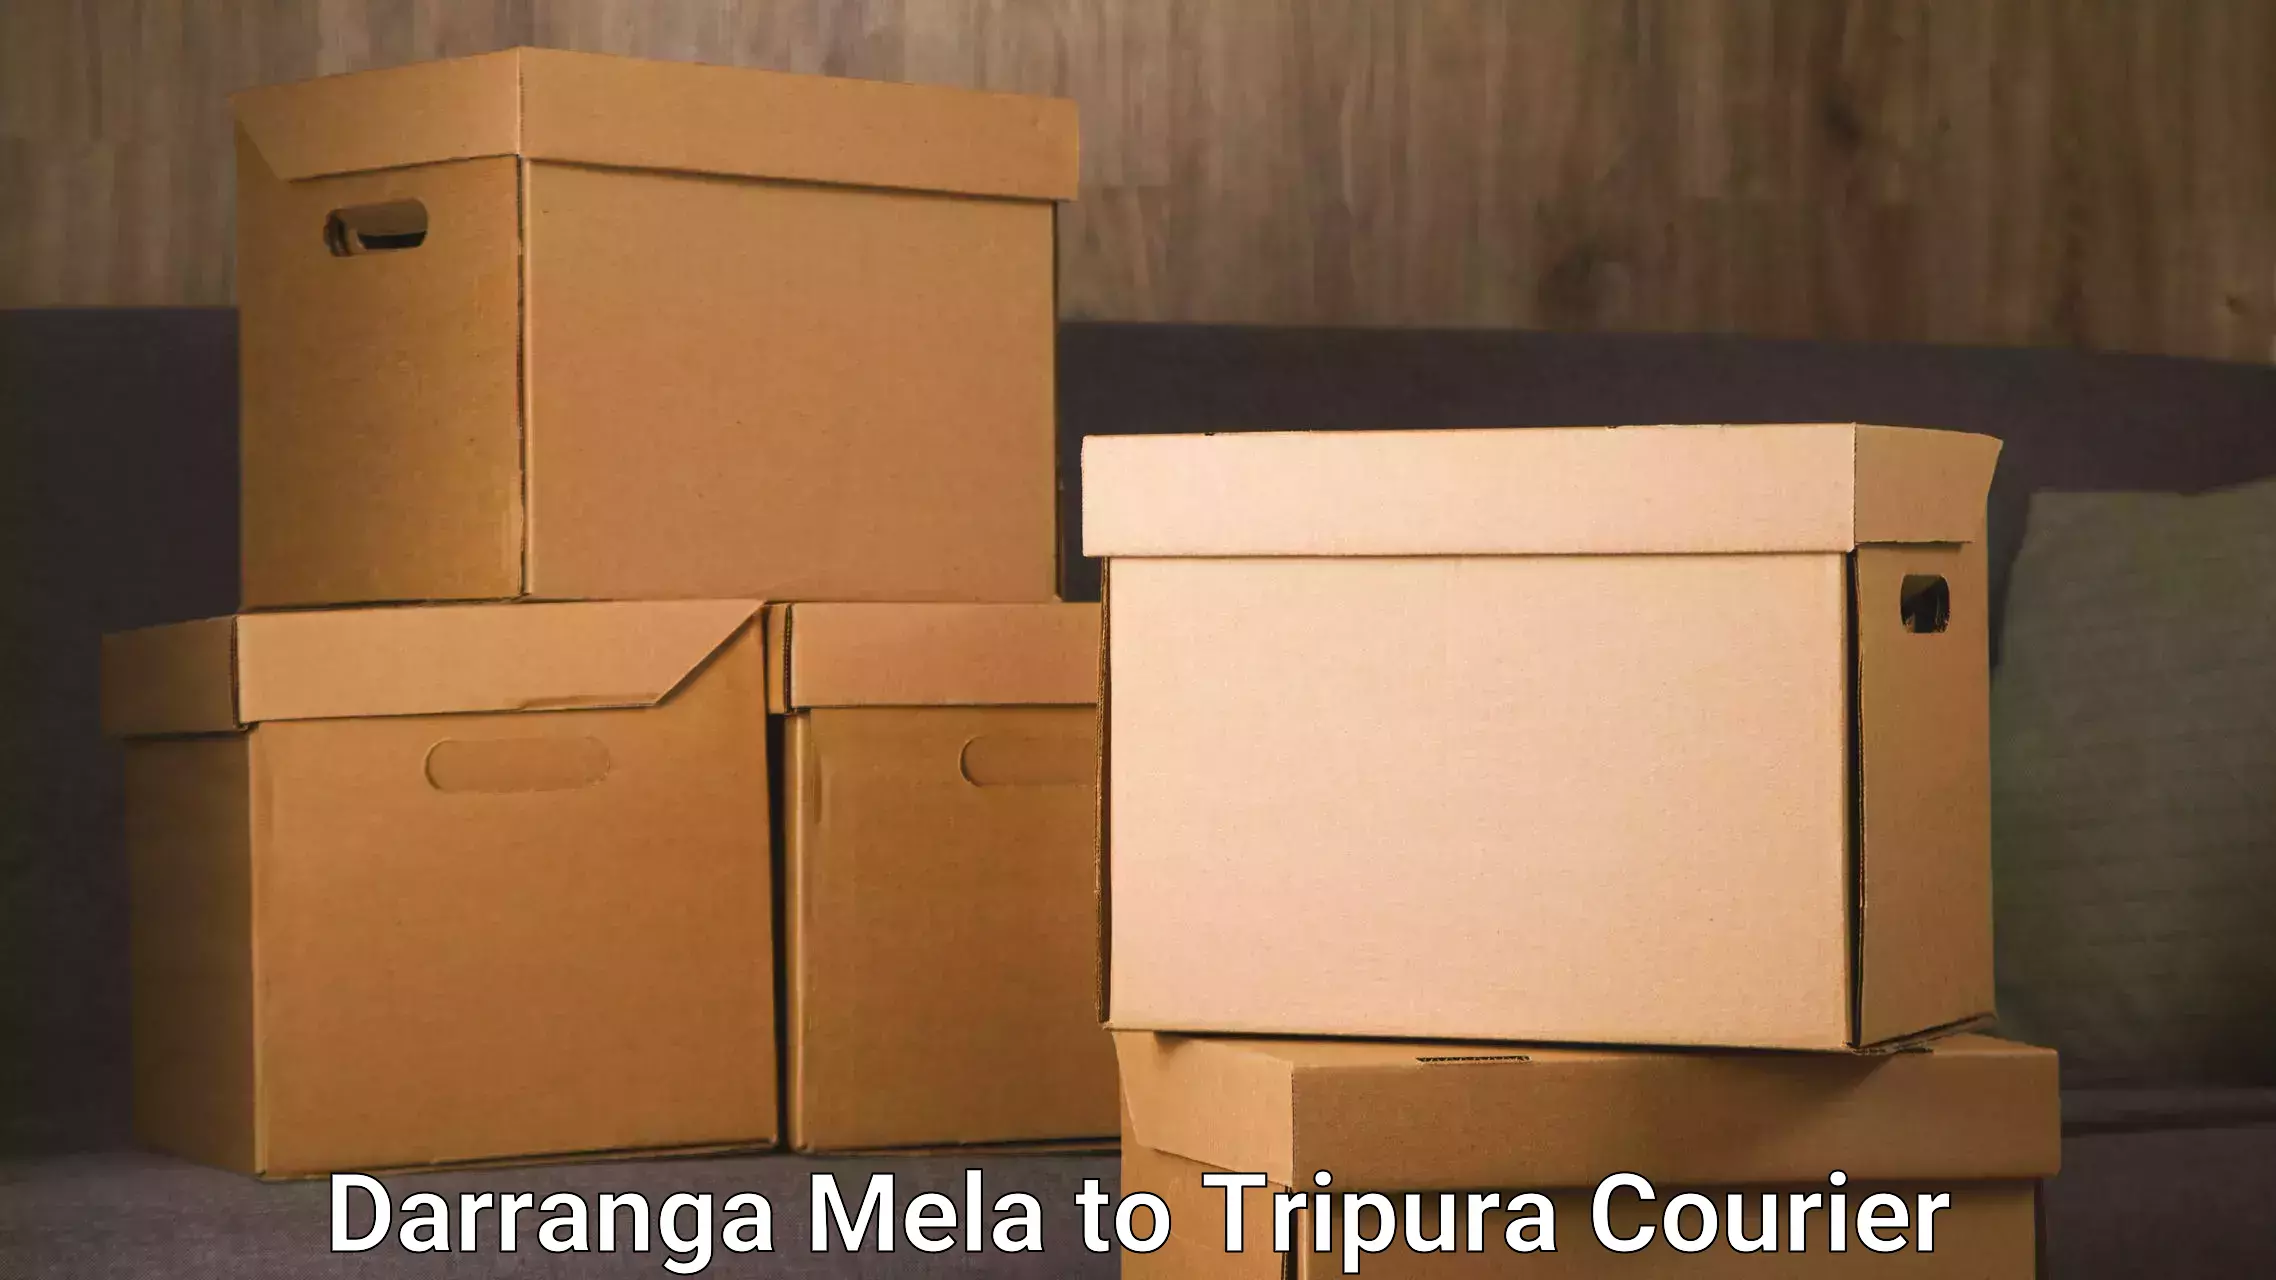 Door-to-door shipment Darranga Mela to Tripura